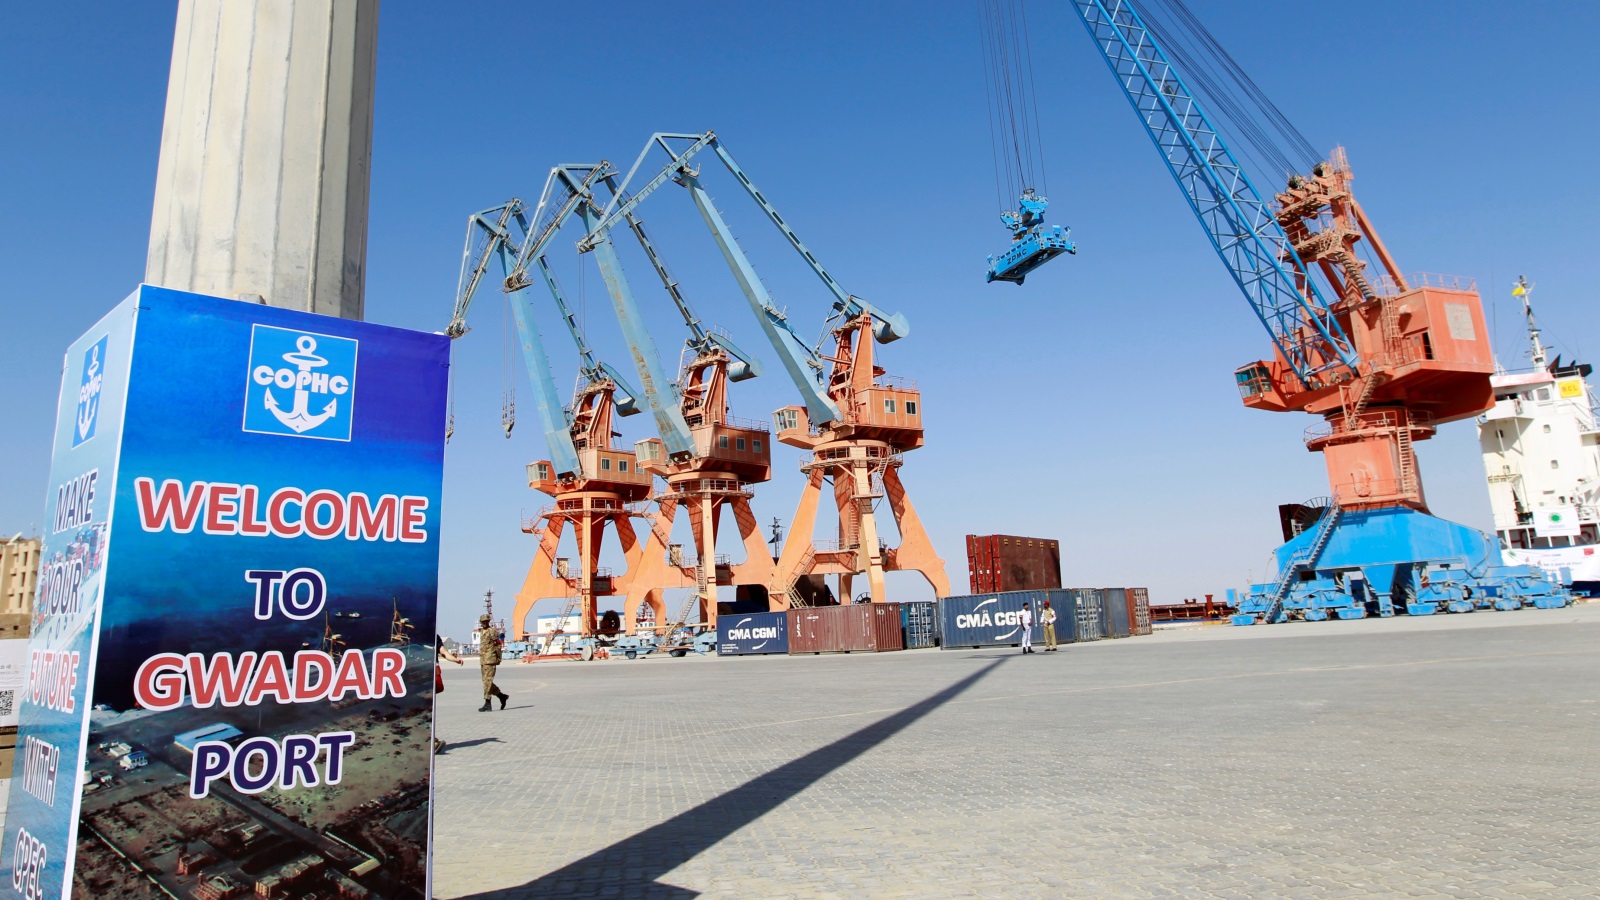 يعد ميناء غوادر منافسا خطيرا لدبي، كما يعتبر الميناء موقعا إستراتيجيا يمنح الصين ووسط آسيا إمكانية الوصول إلى منطقة الخليج والشرق الأوسط